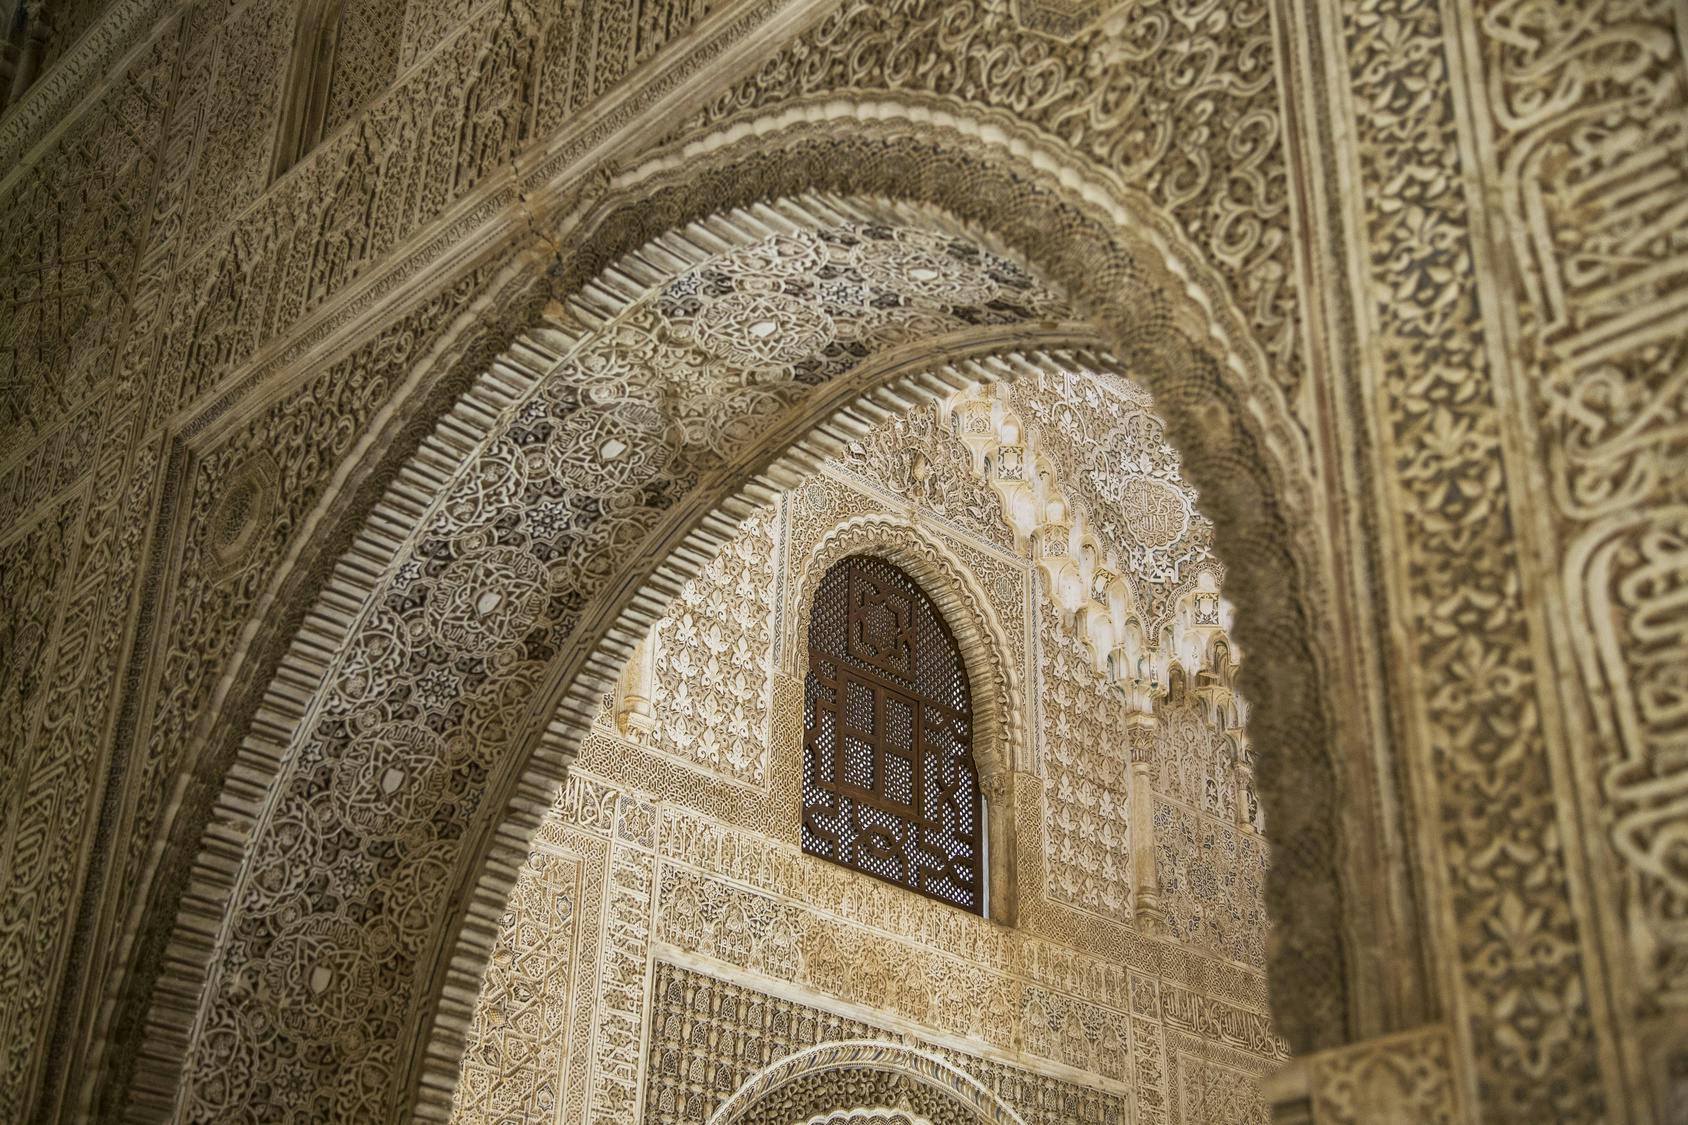 Visita nocturna a la Alhambra en grupos de máximo 10 personas